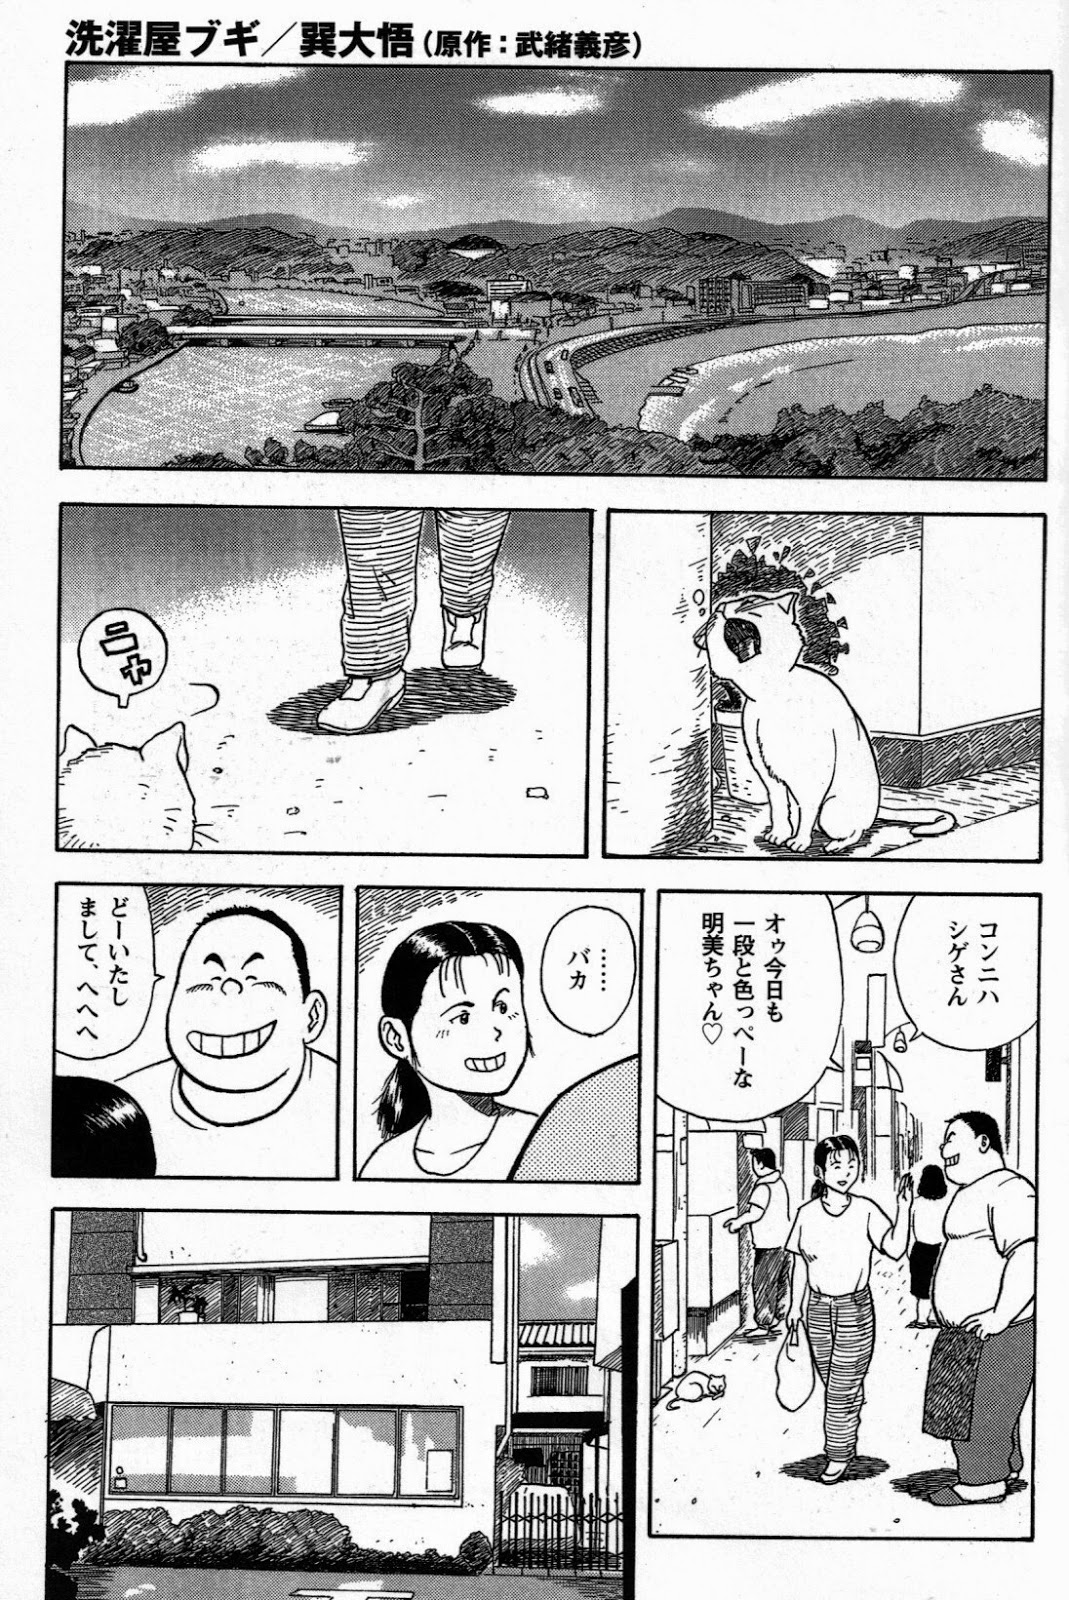 [Tatsumi Daigo, Yoshihiko Takeo] Sentakuya Bugi (GBless Vol.04) page 1 full